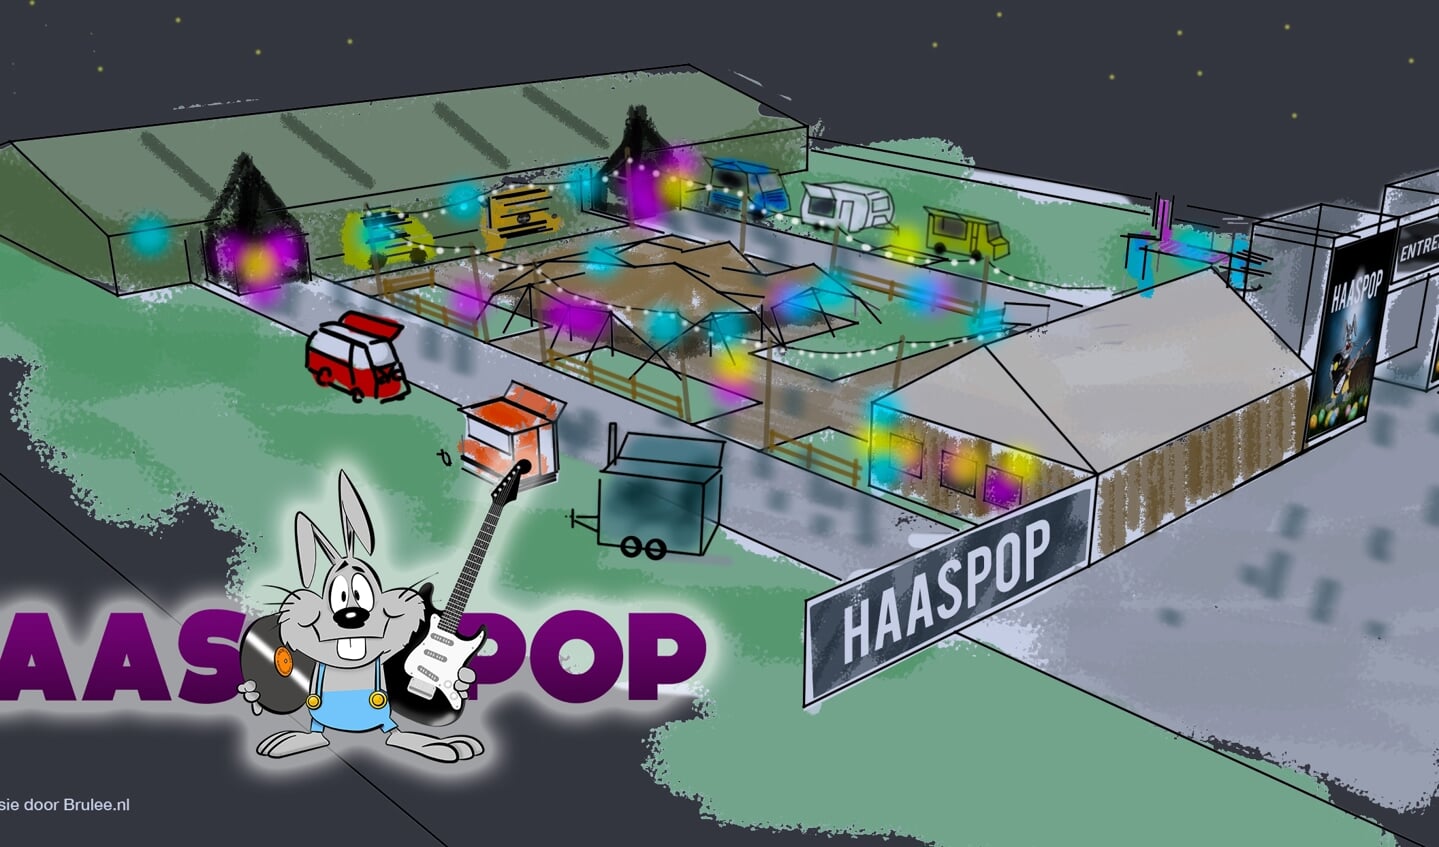 Haaspop wordt gehouden op een festivalterrein, met feesttenten, foodtrucks, bars en skihut